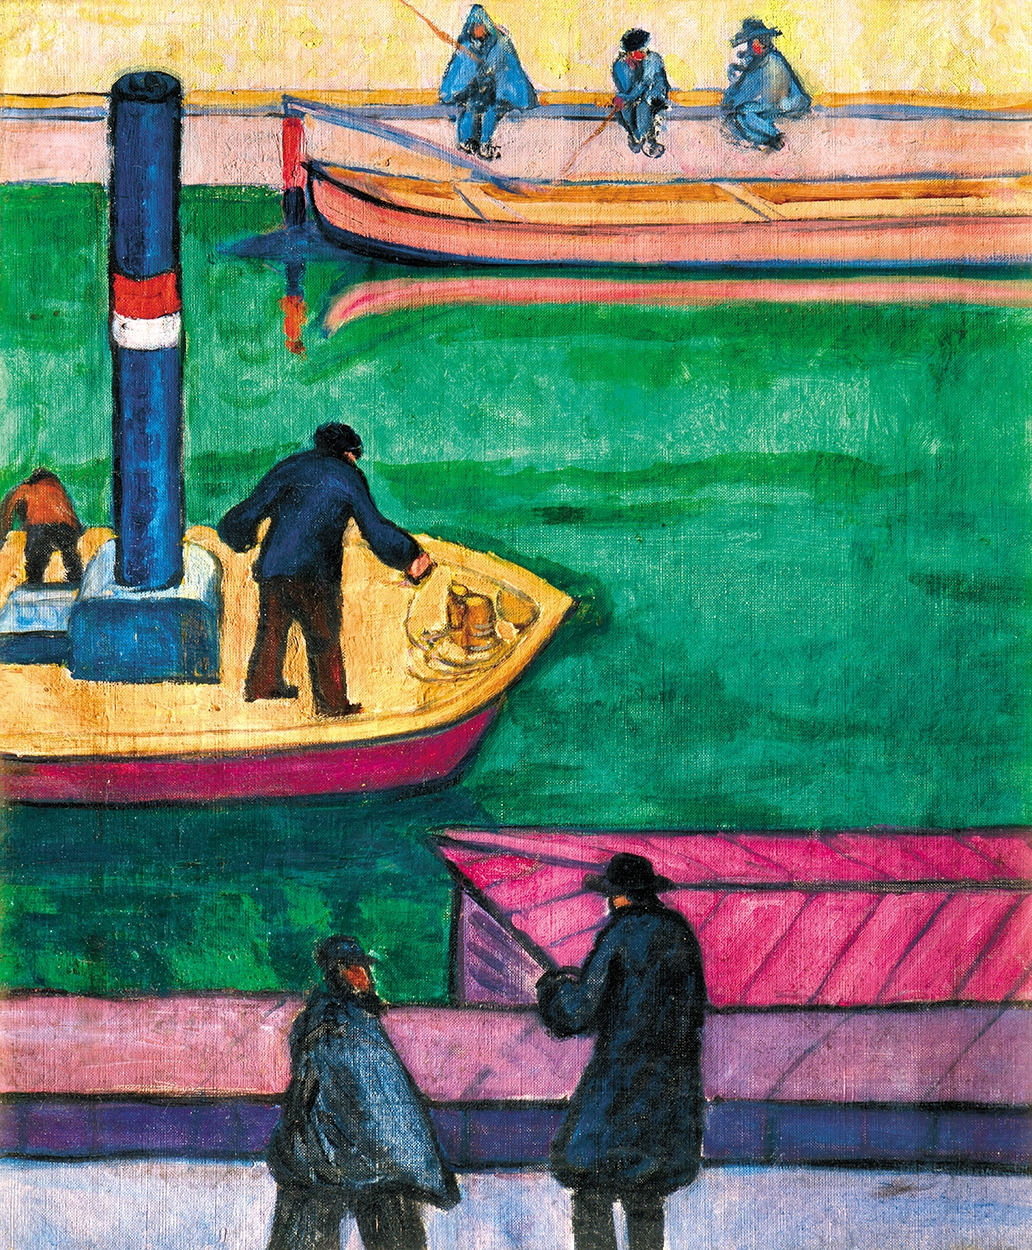 Tihanyi Lajos (1885-1938) Boaters, 1909